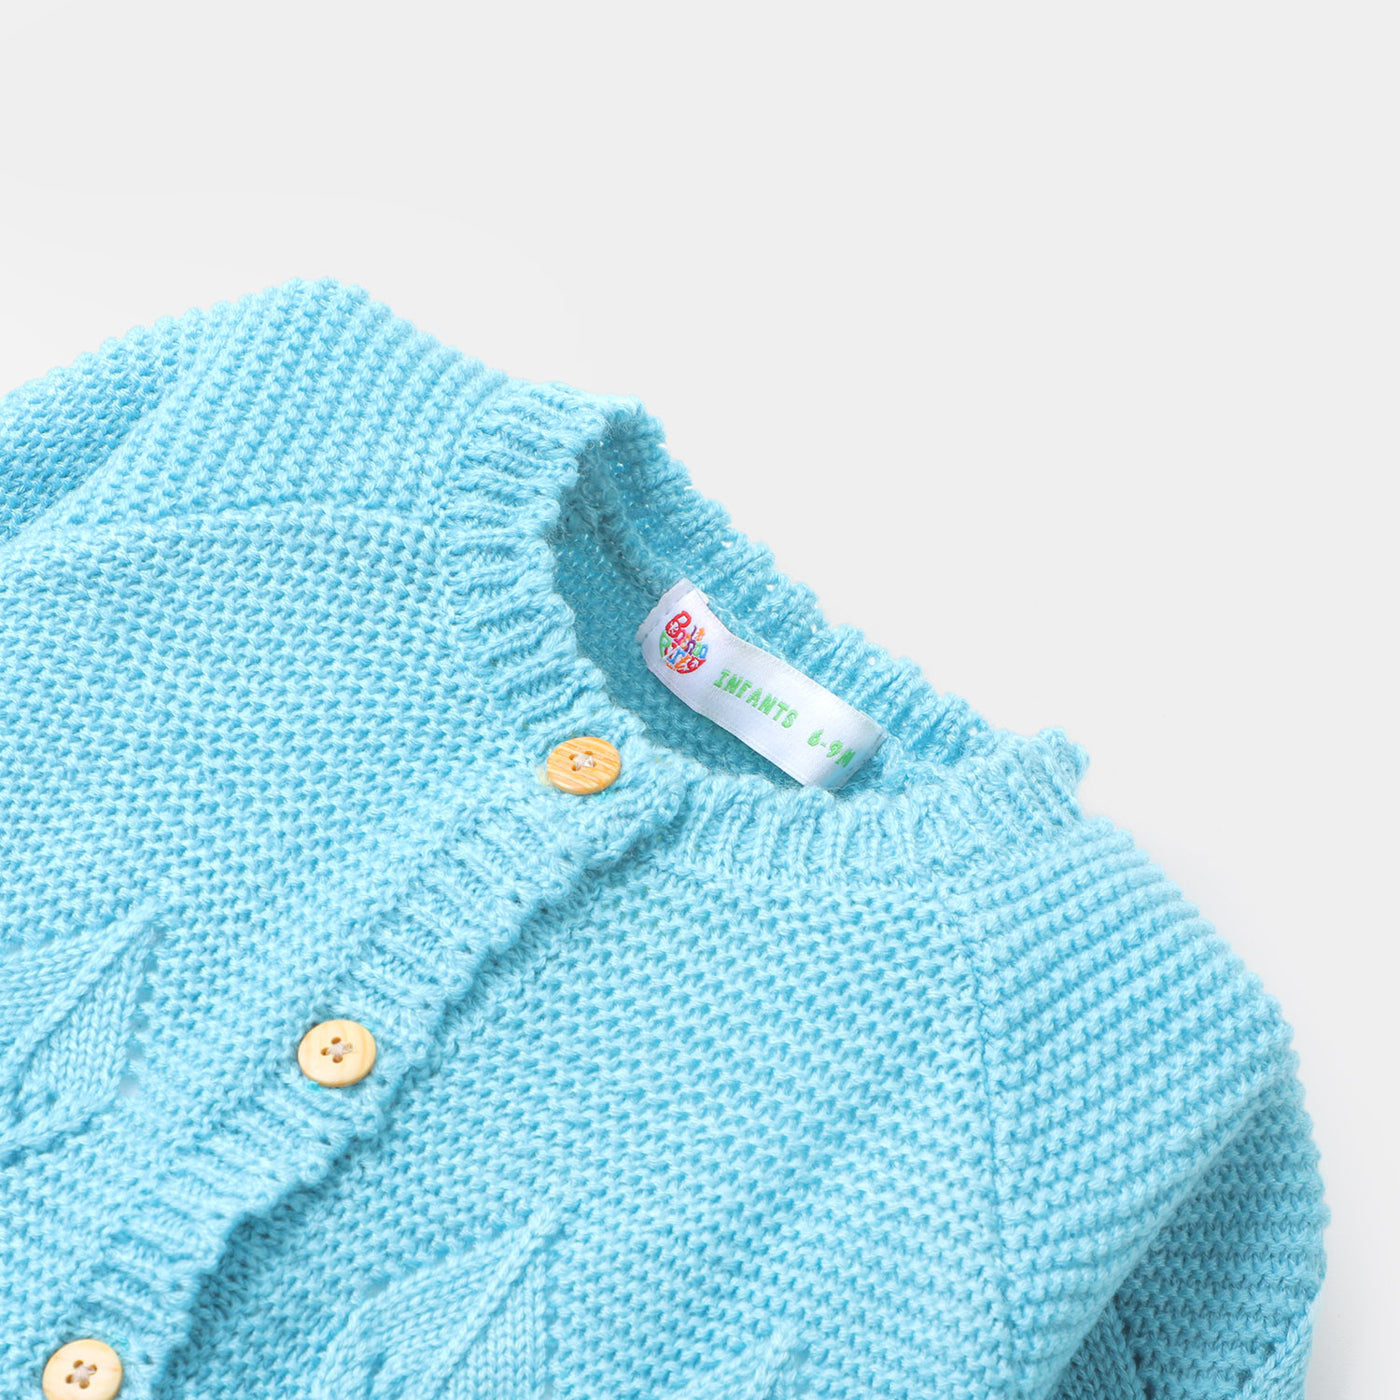 Infant Girls Sweater BP38-22 - Light Blue